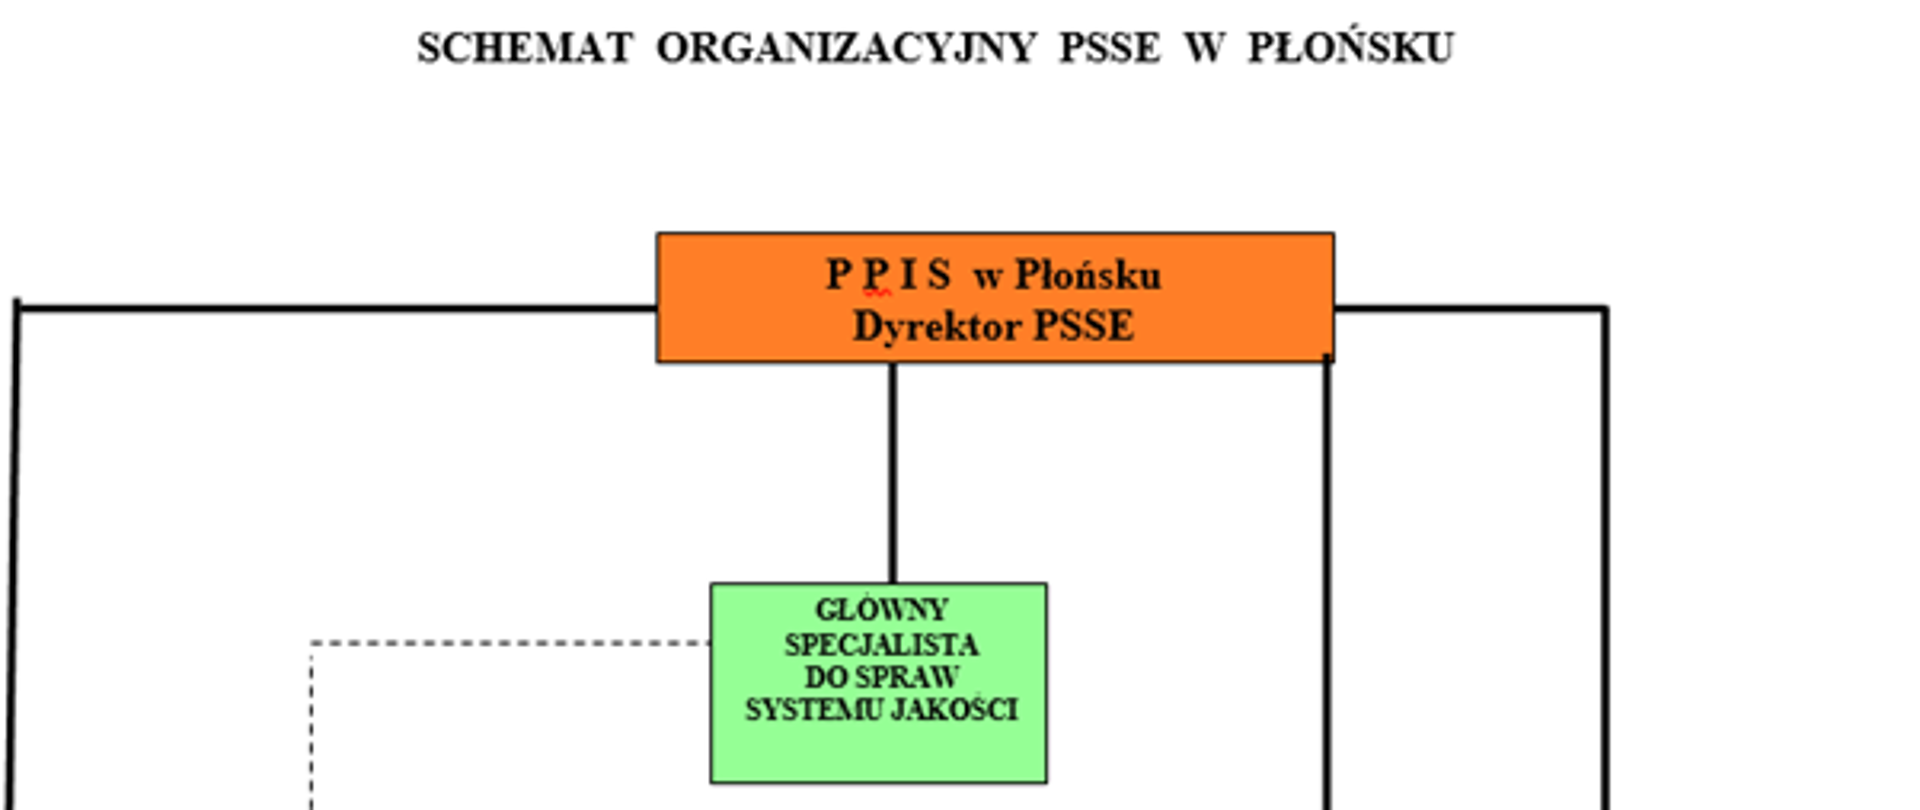 Schemat organizacyjny PSSE w Płońsku